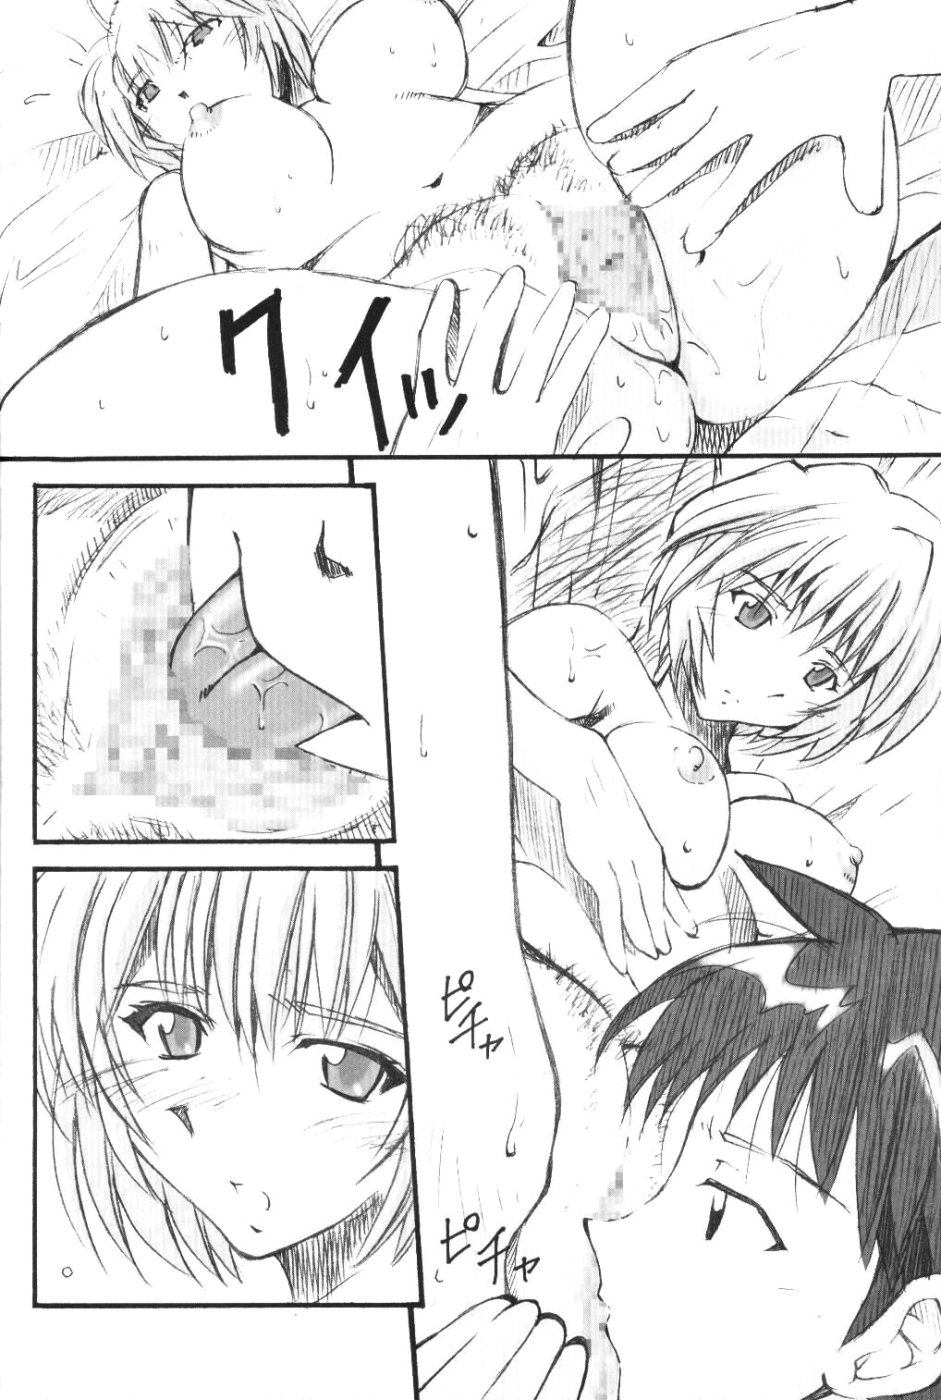 (SC23) [I&I (Naohiro)] SHINJI 01 (Neon Genesis Evangelion) page 9 full